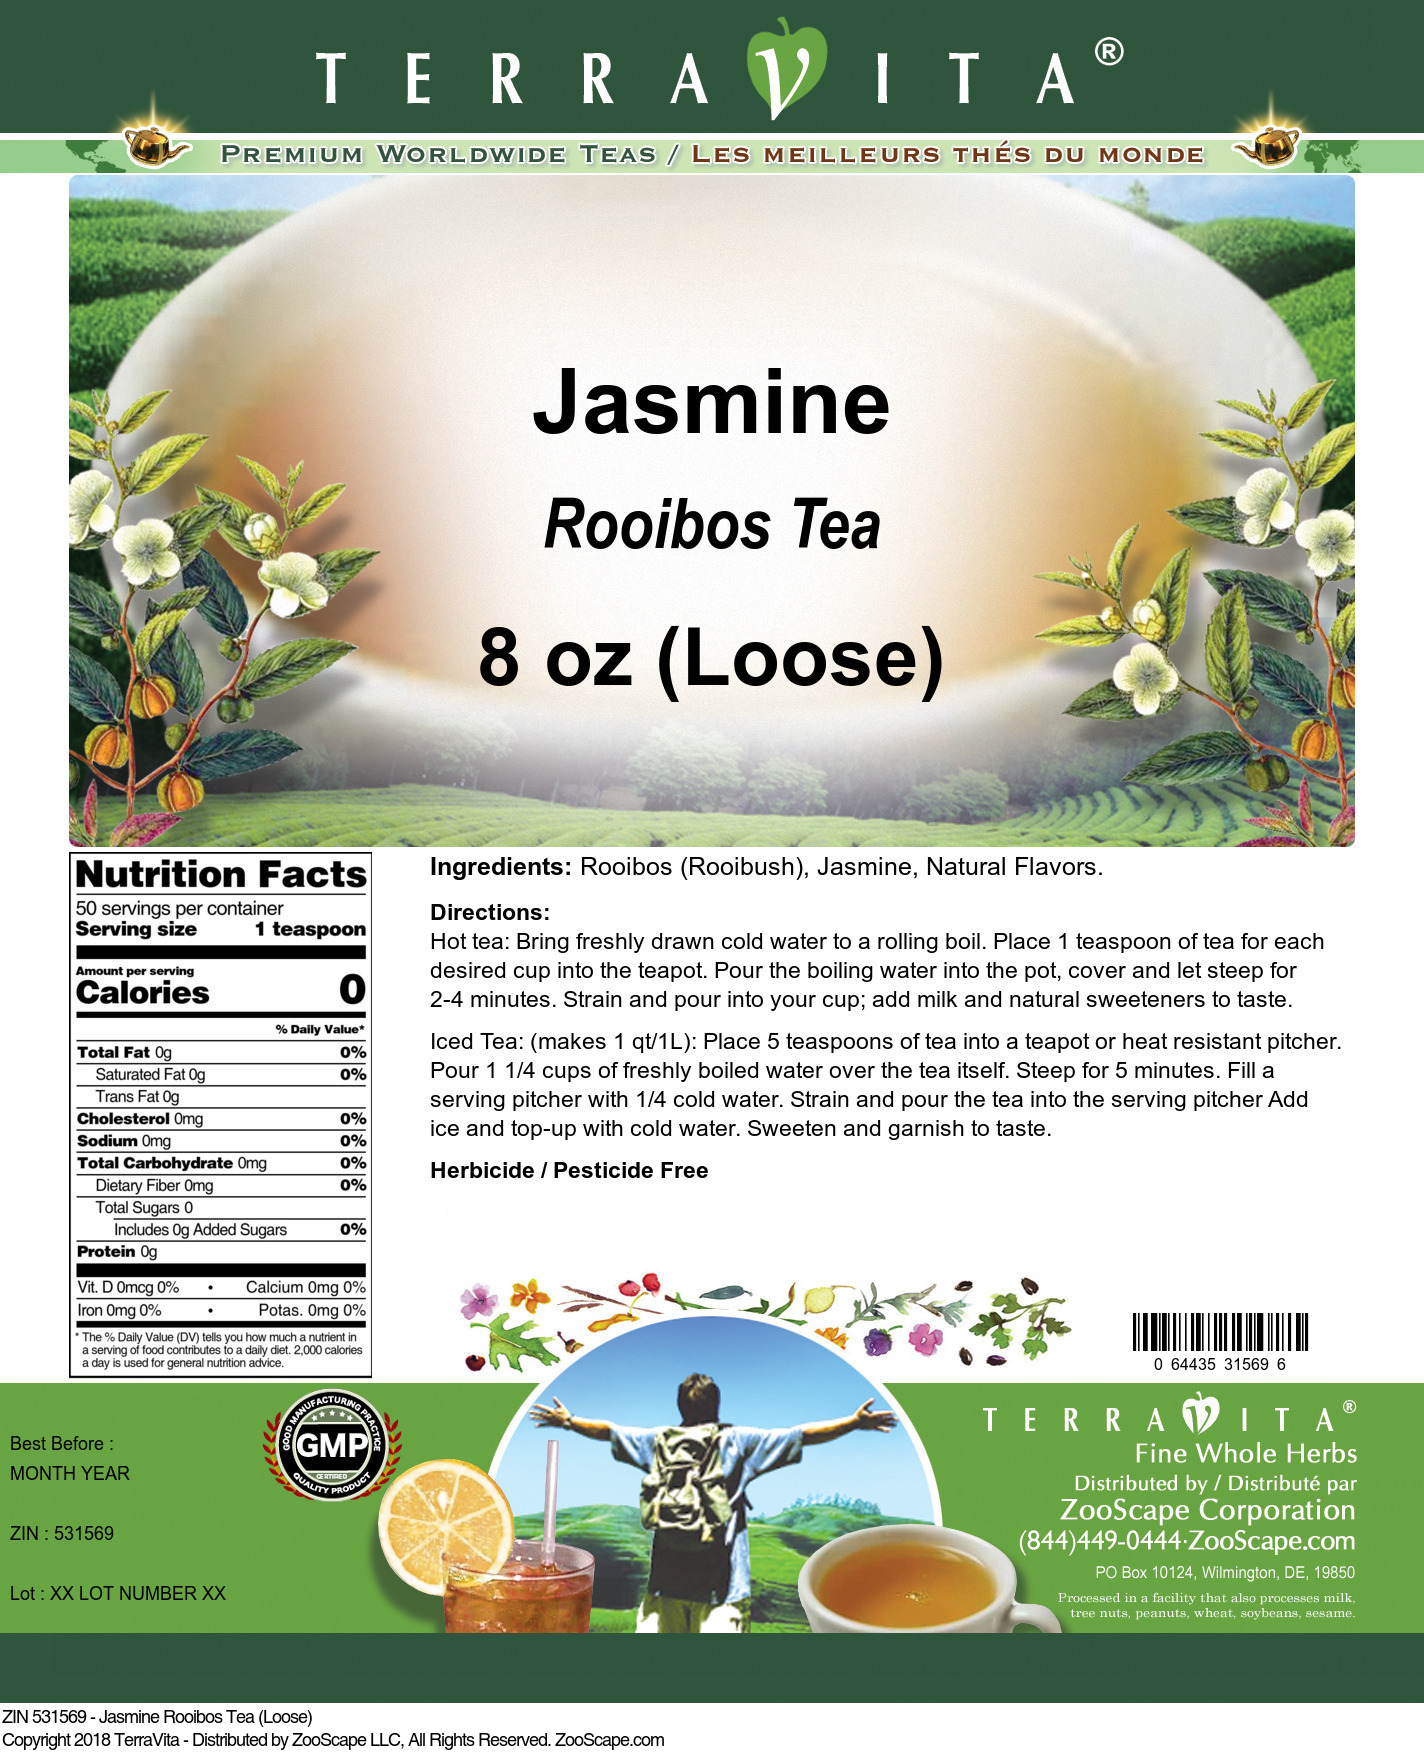 Jasmine Rooibos Tea (Loose) - Label